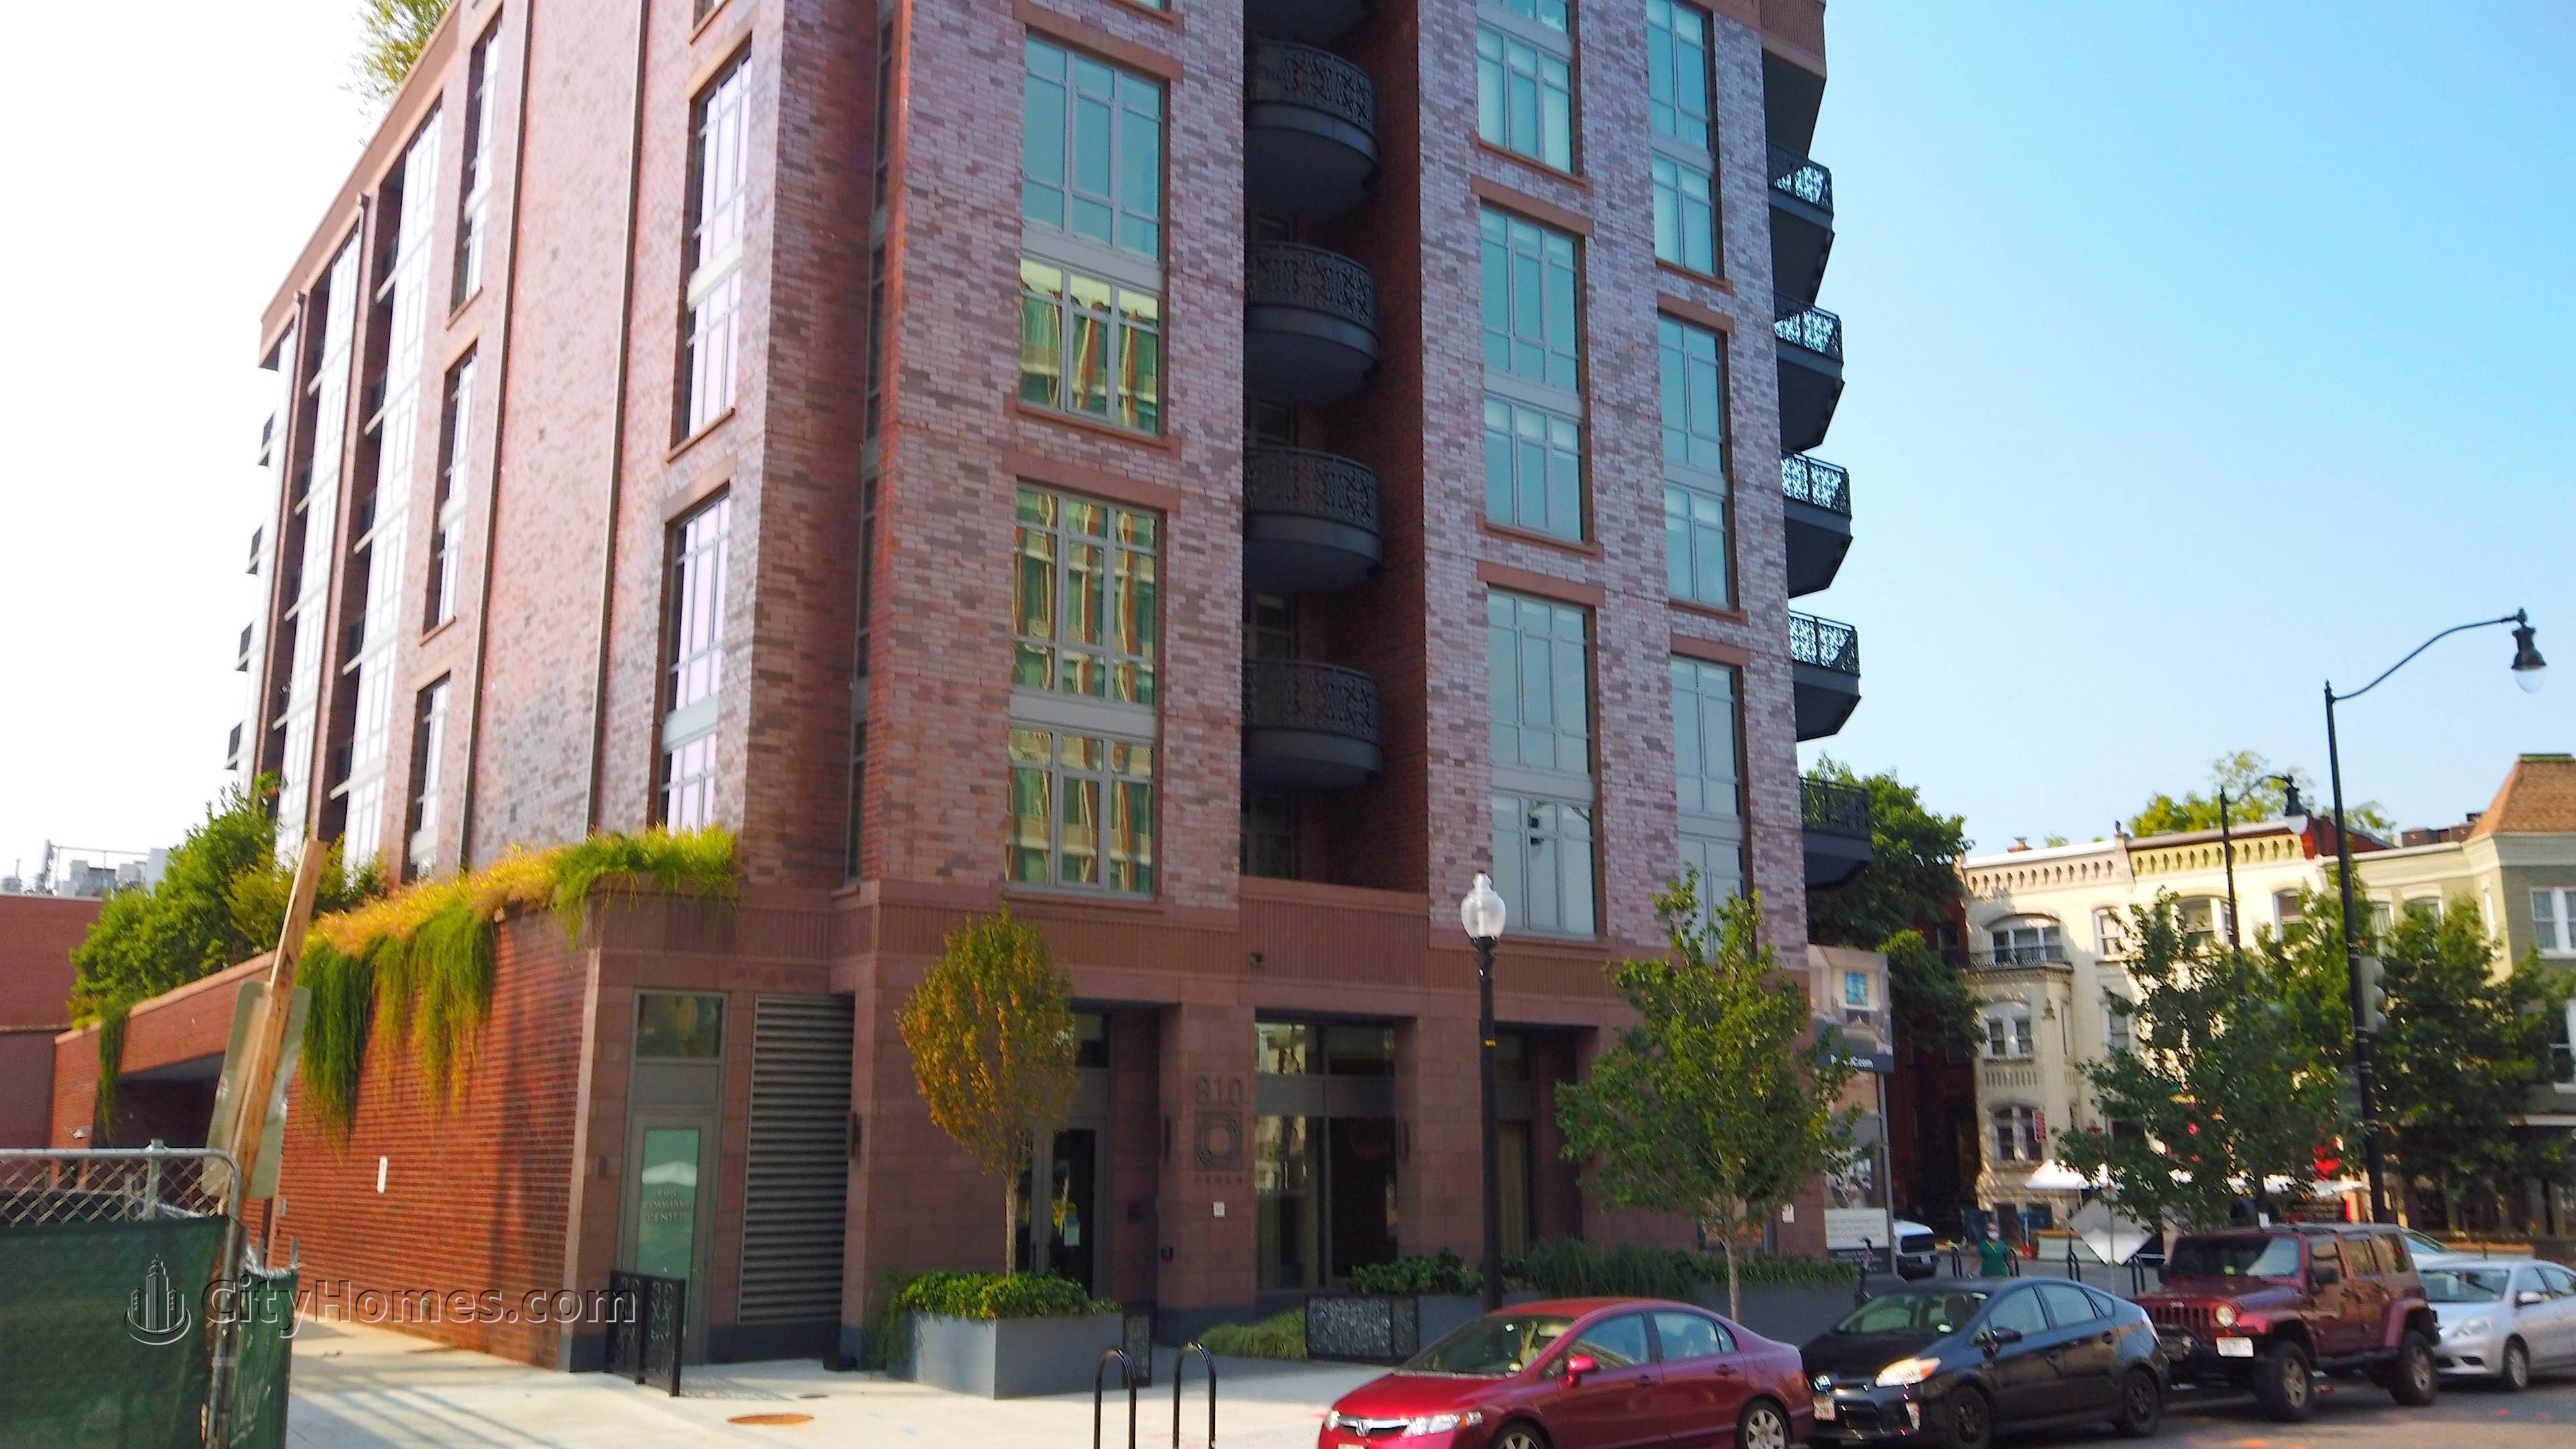 7. Perla byggnad vid 810 O St NW, Shaw, Washington, DC 20001